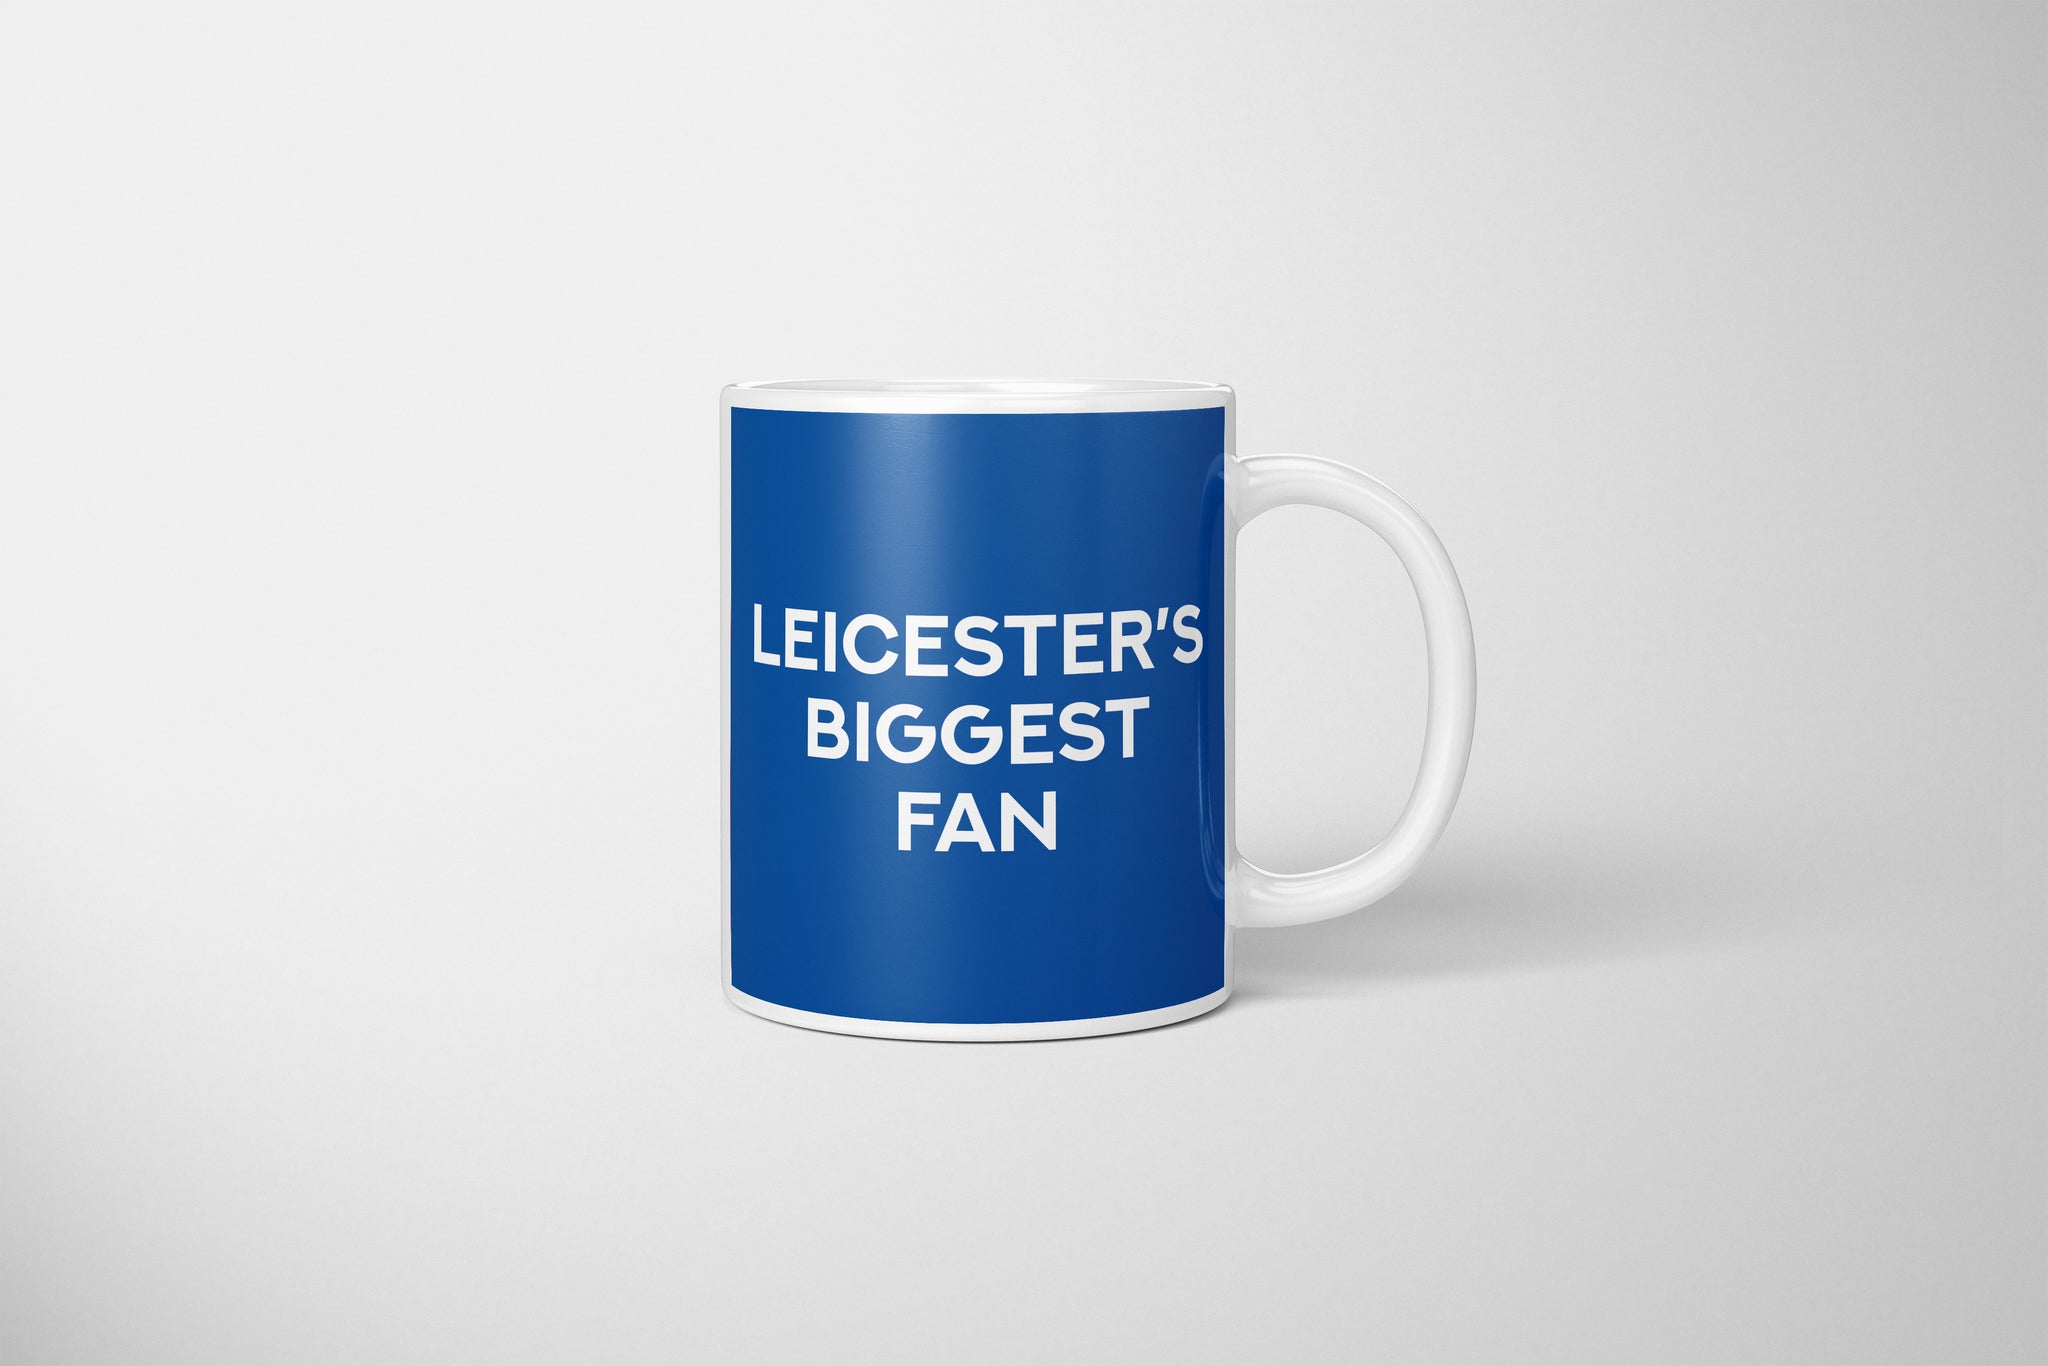 Leicester City Fan Mug, Leicester City Fan Mug, Leicester City FC Mug, Leicester Football Fan Gift, Leicester City Swear Mug, Gift For Leicester City Fan, LCFC Mug,  Perfect Mug For Leicester City Fan, Leicester City Present, Leicester City Football Fan Present